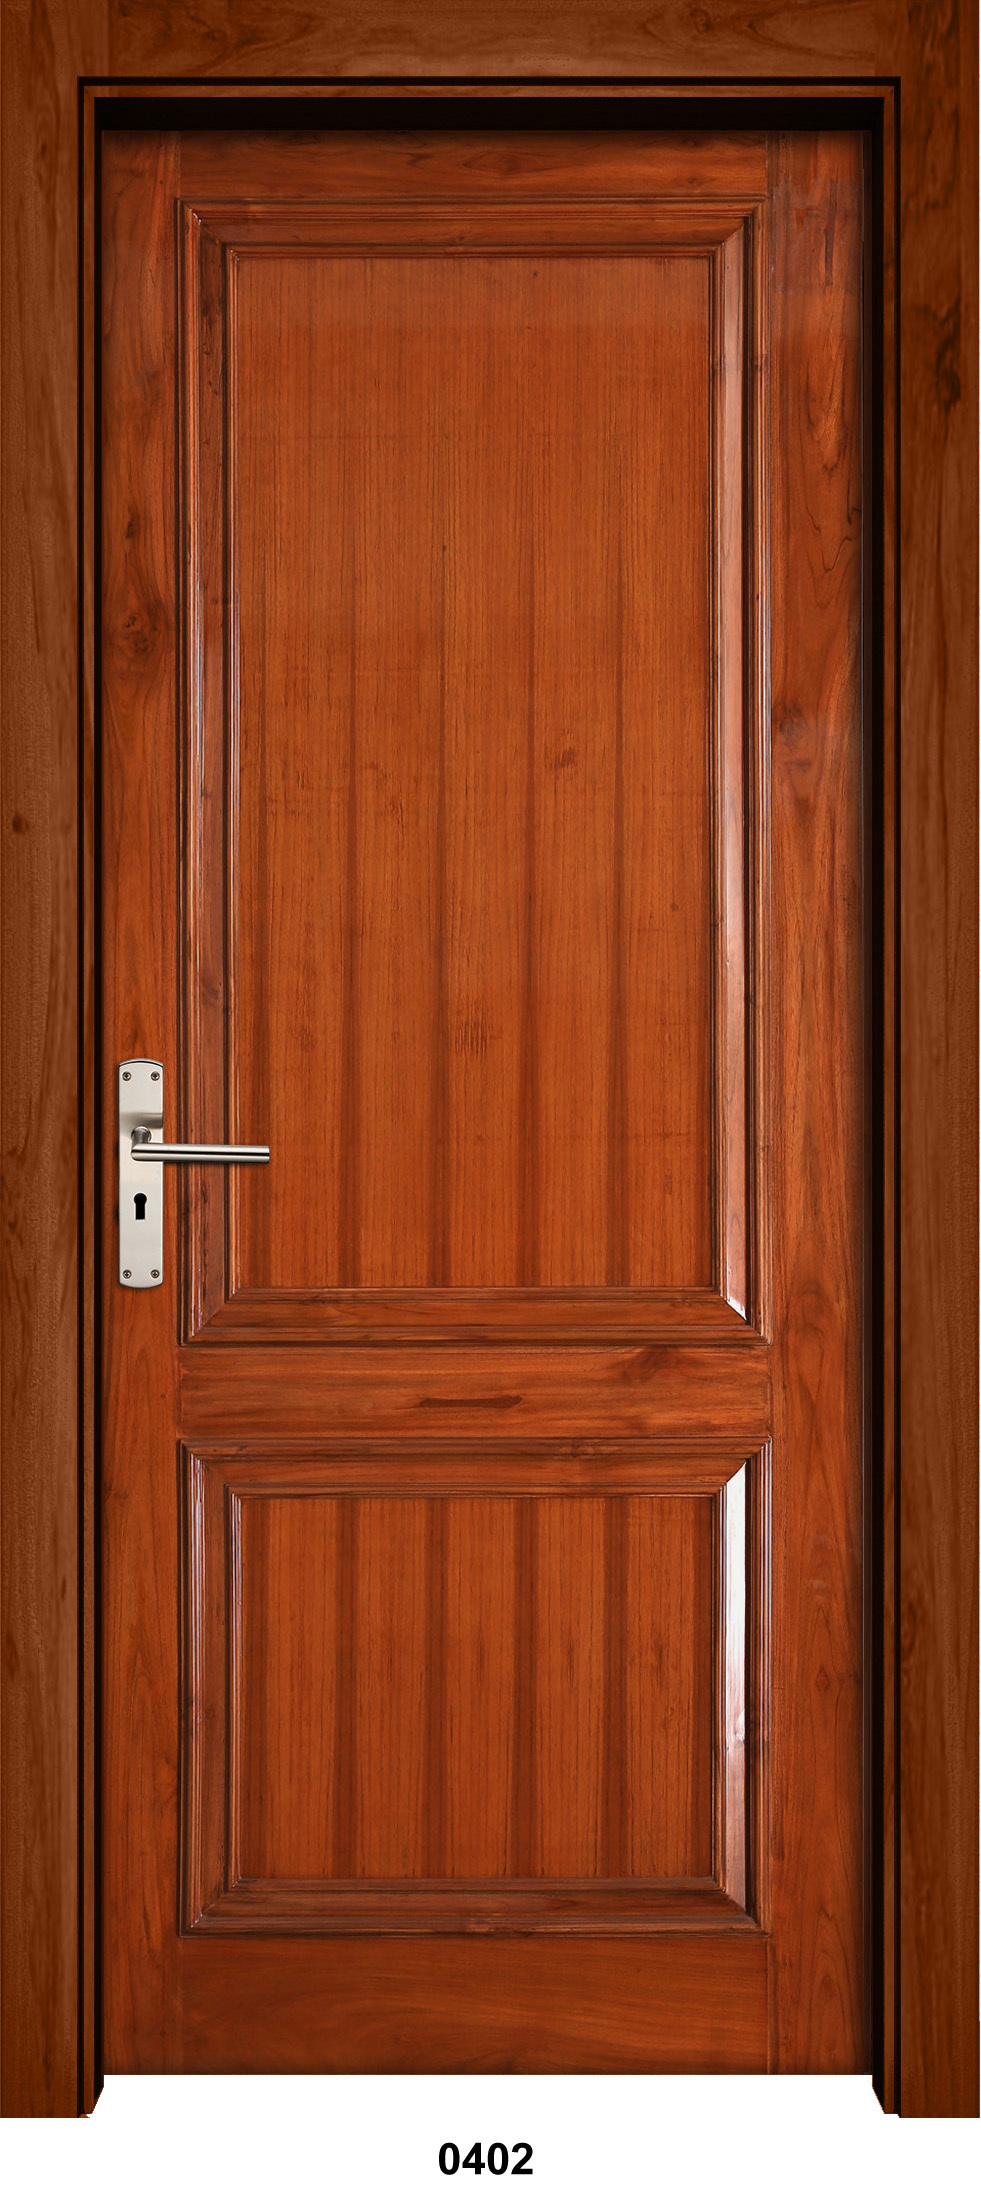 White Primed Veneer Wood Home Interior Door, Wooden Door Cost